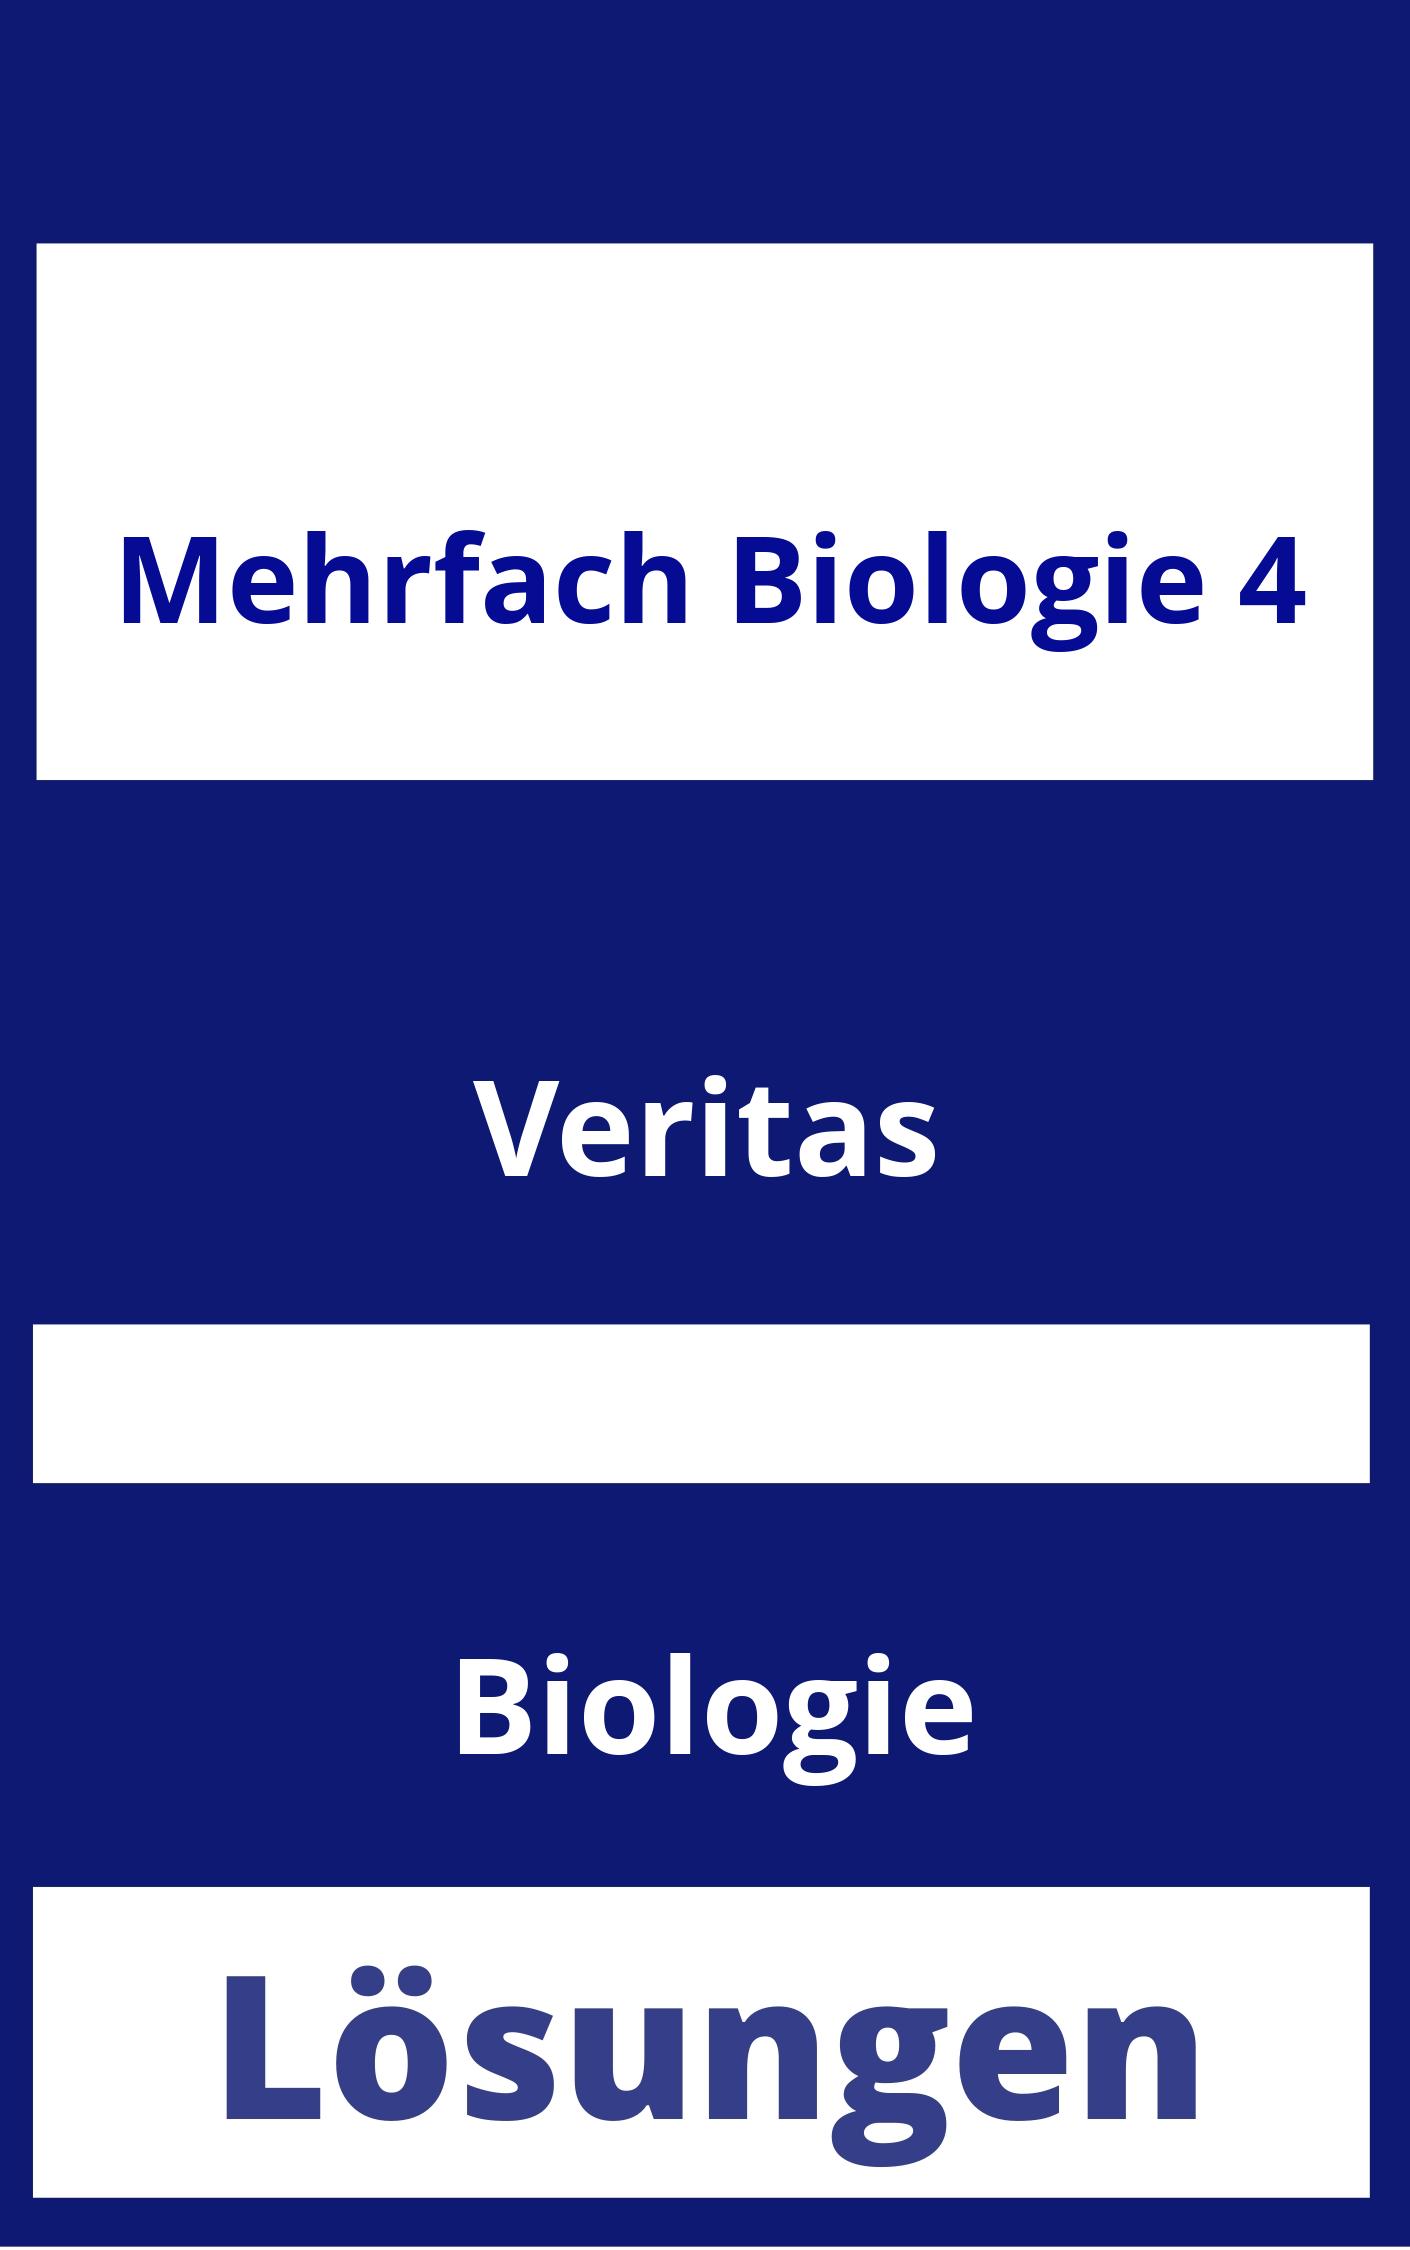 MEHRfach Biologie 4 Lösungen PDF